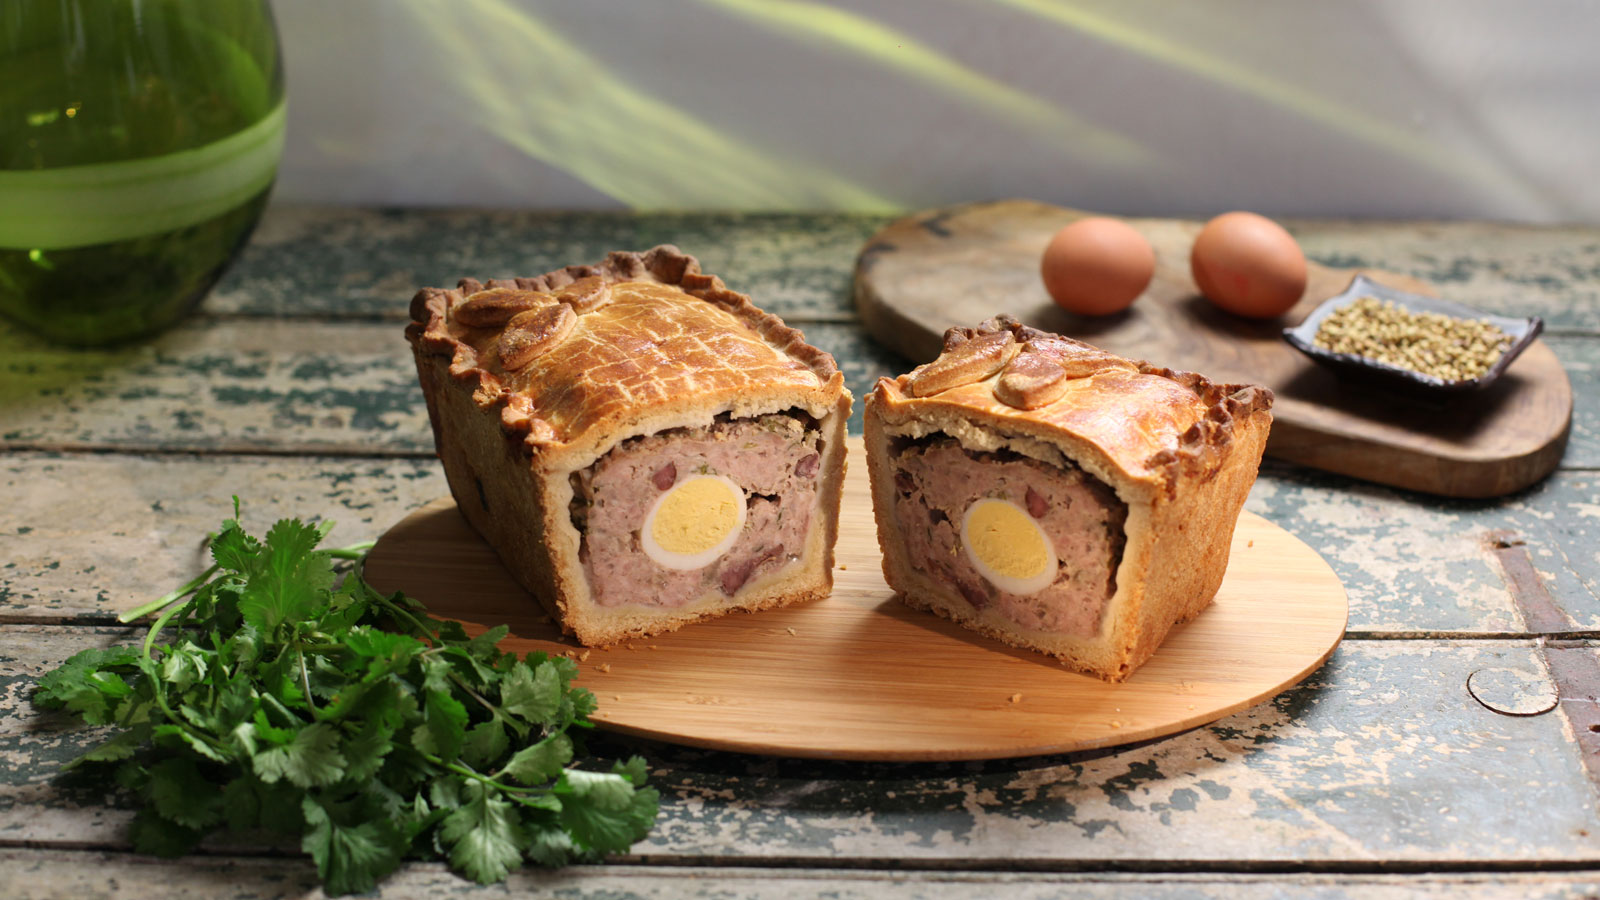 Pastel de carne de cerdo y huevo (Raised pork and egg pie) - Paul Hollywood  - Receta - Canal Cocina